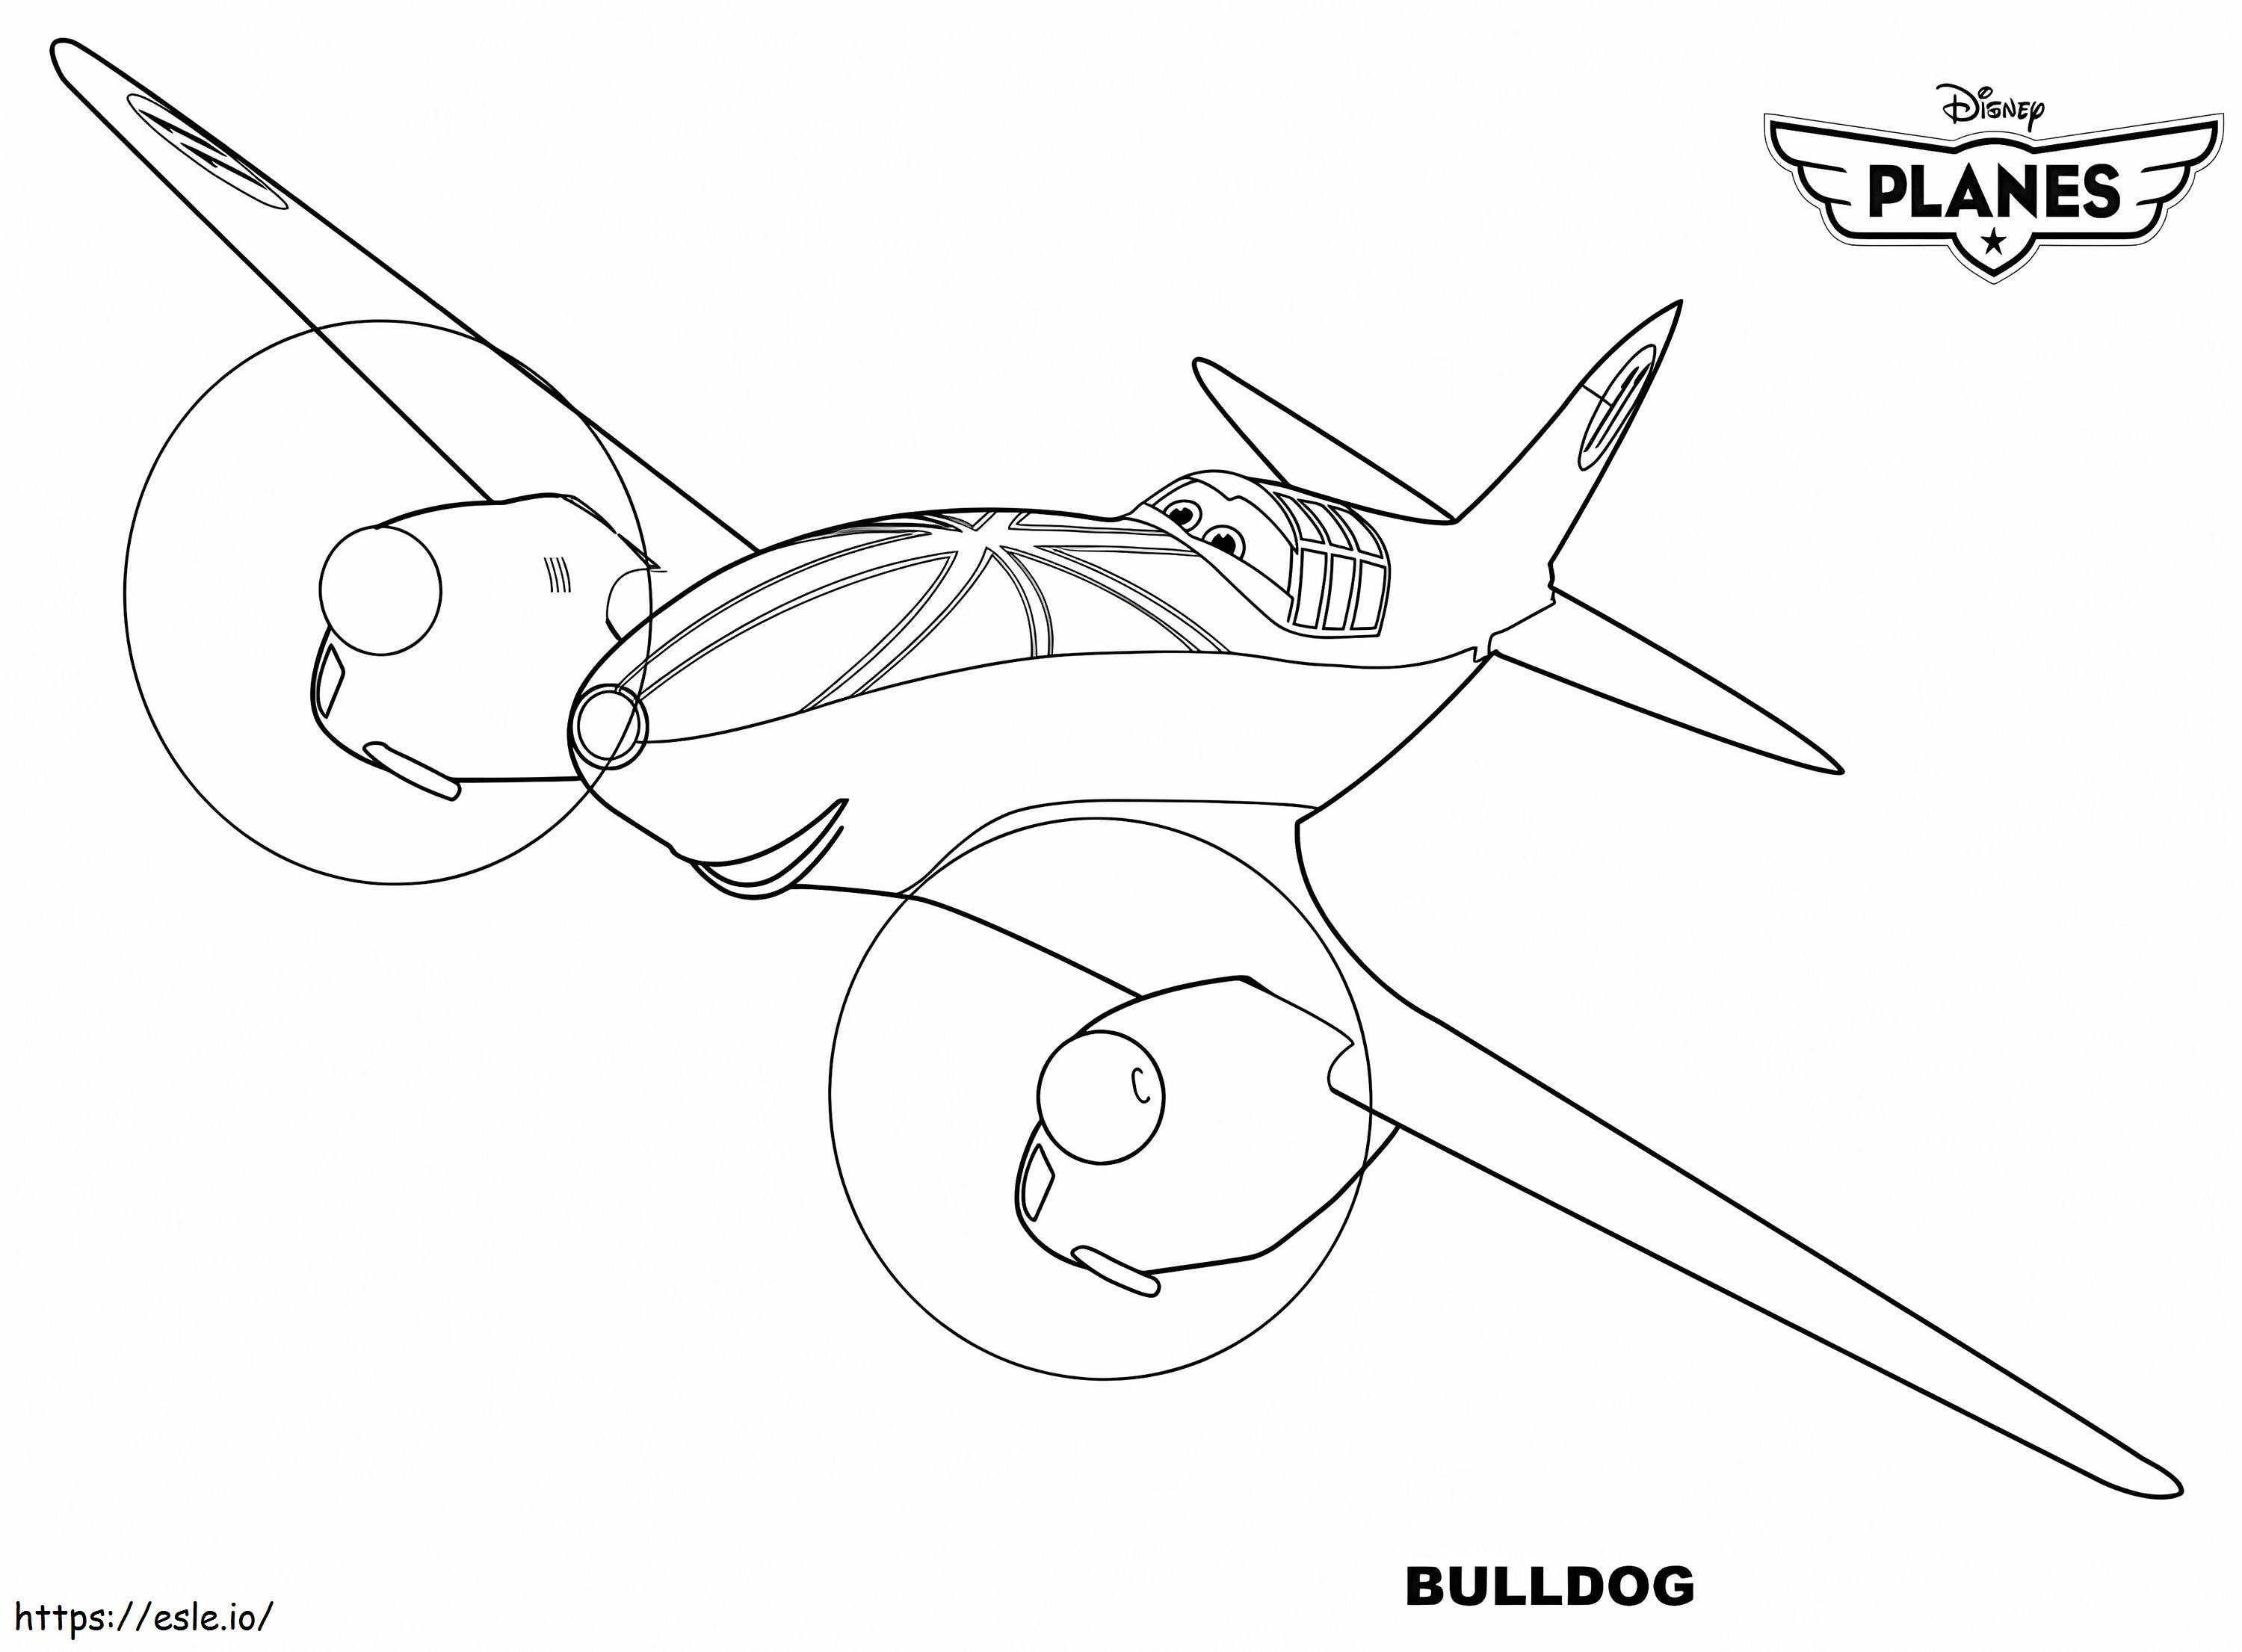 Disney Planes Bulldog coloring page